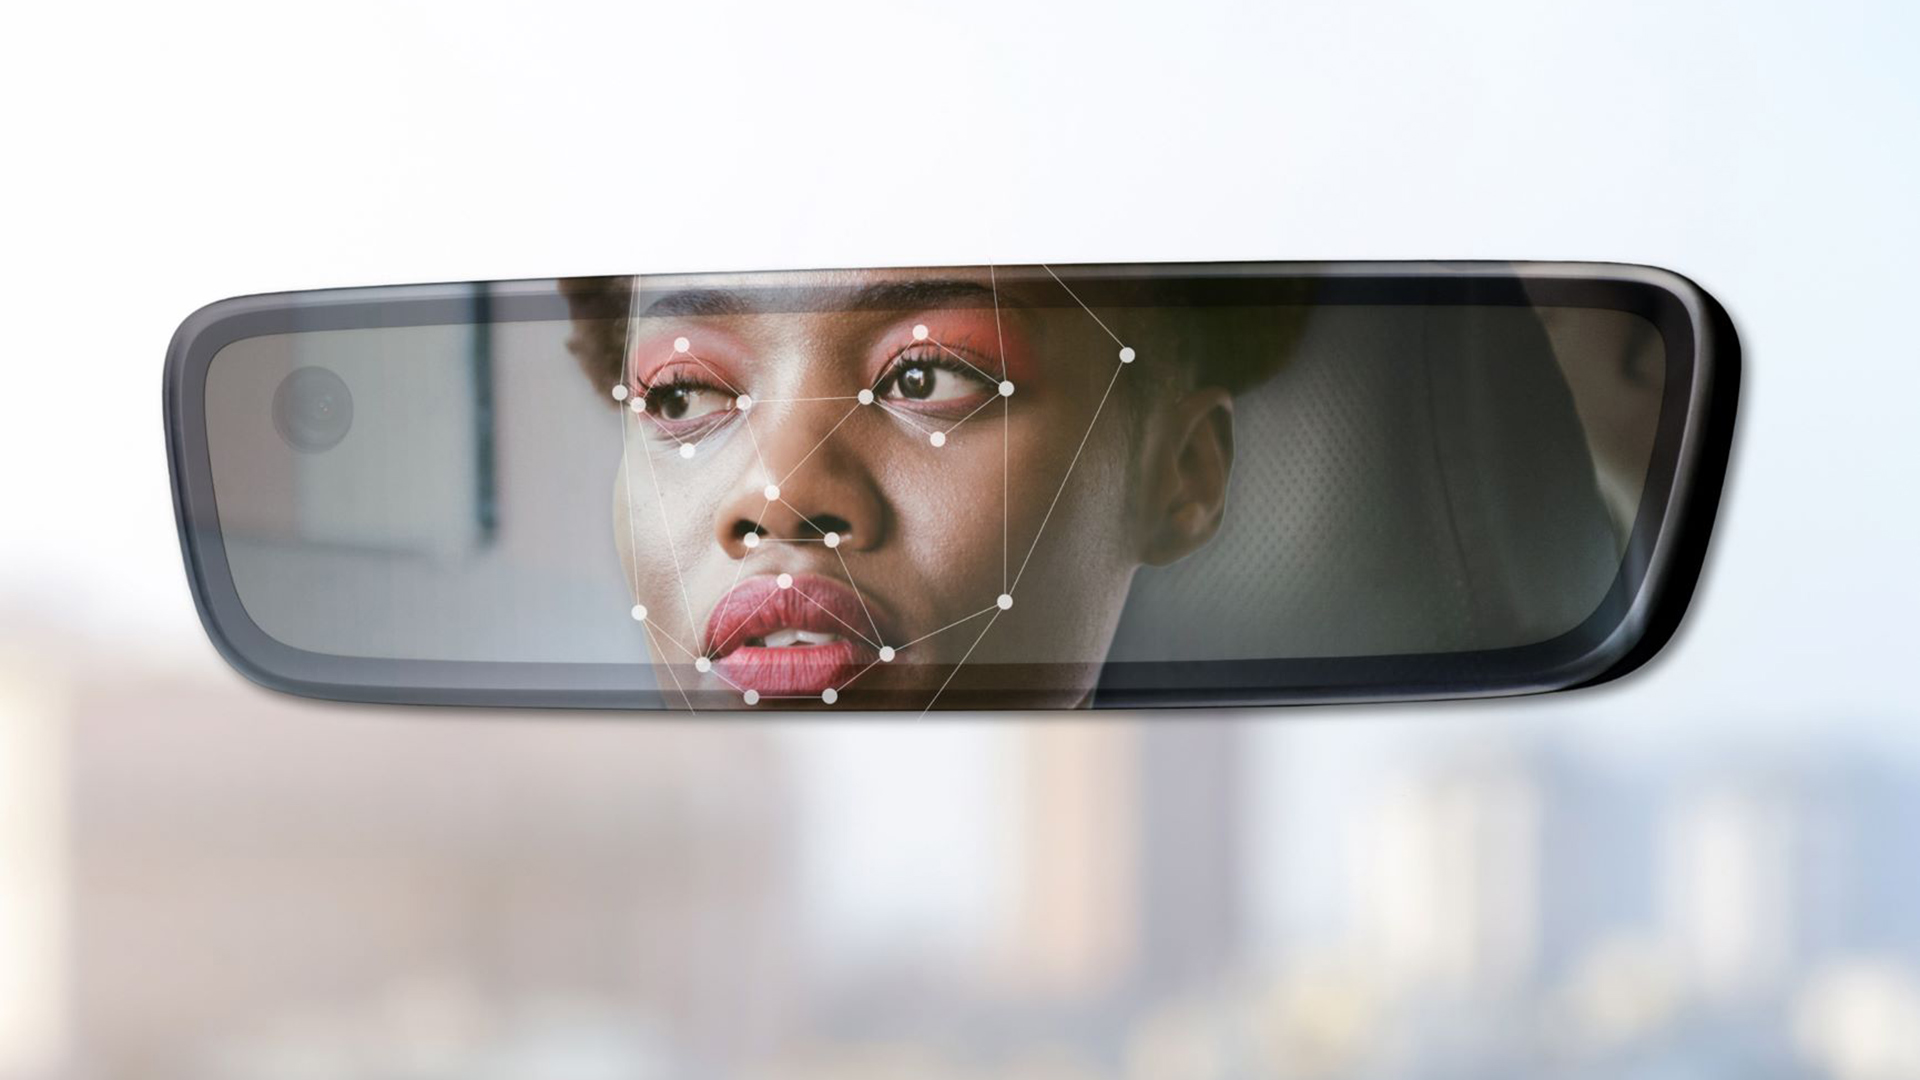 Por la posición dentro del vehículo, el espejo central es perfecto para detectar distracciones o cansancio del conductor